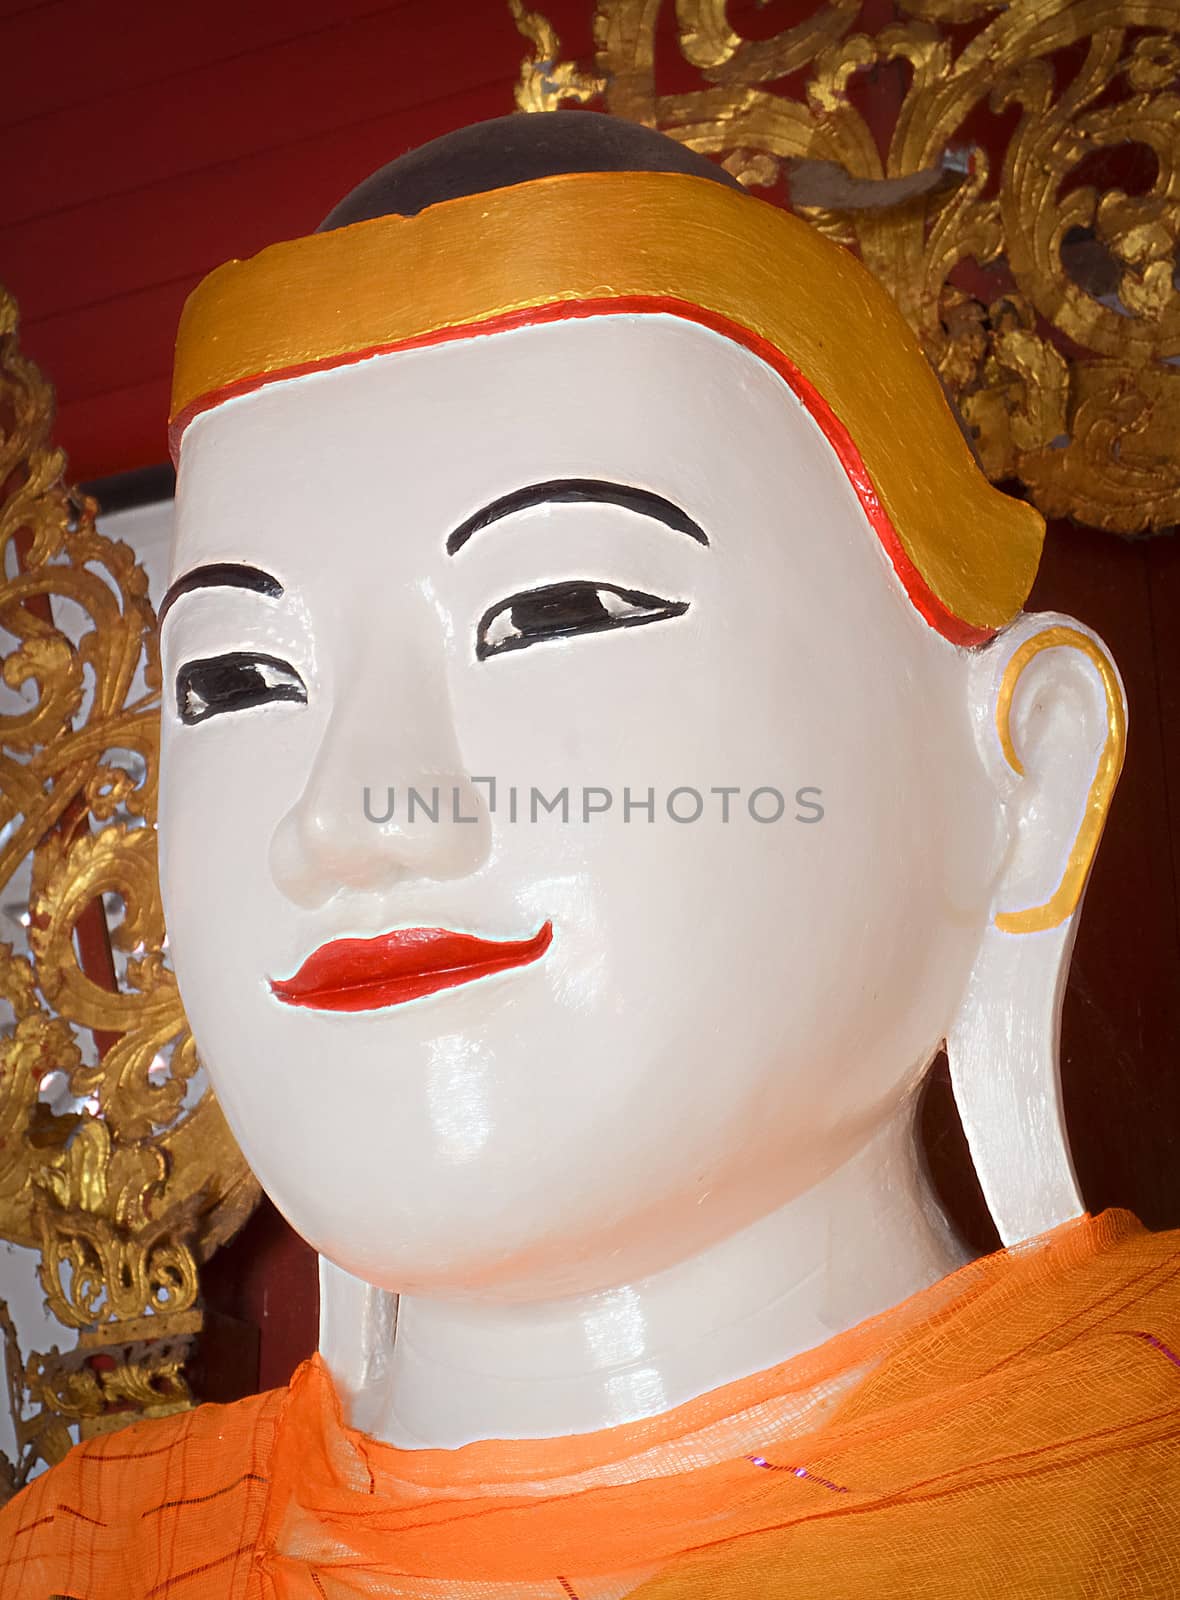 The Tai Yai Buddha Image,Landmark of Buddhism in Northern of Thailand.